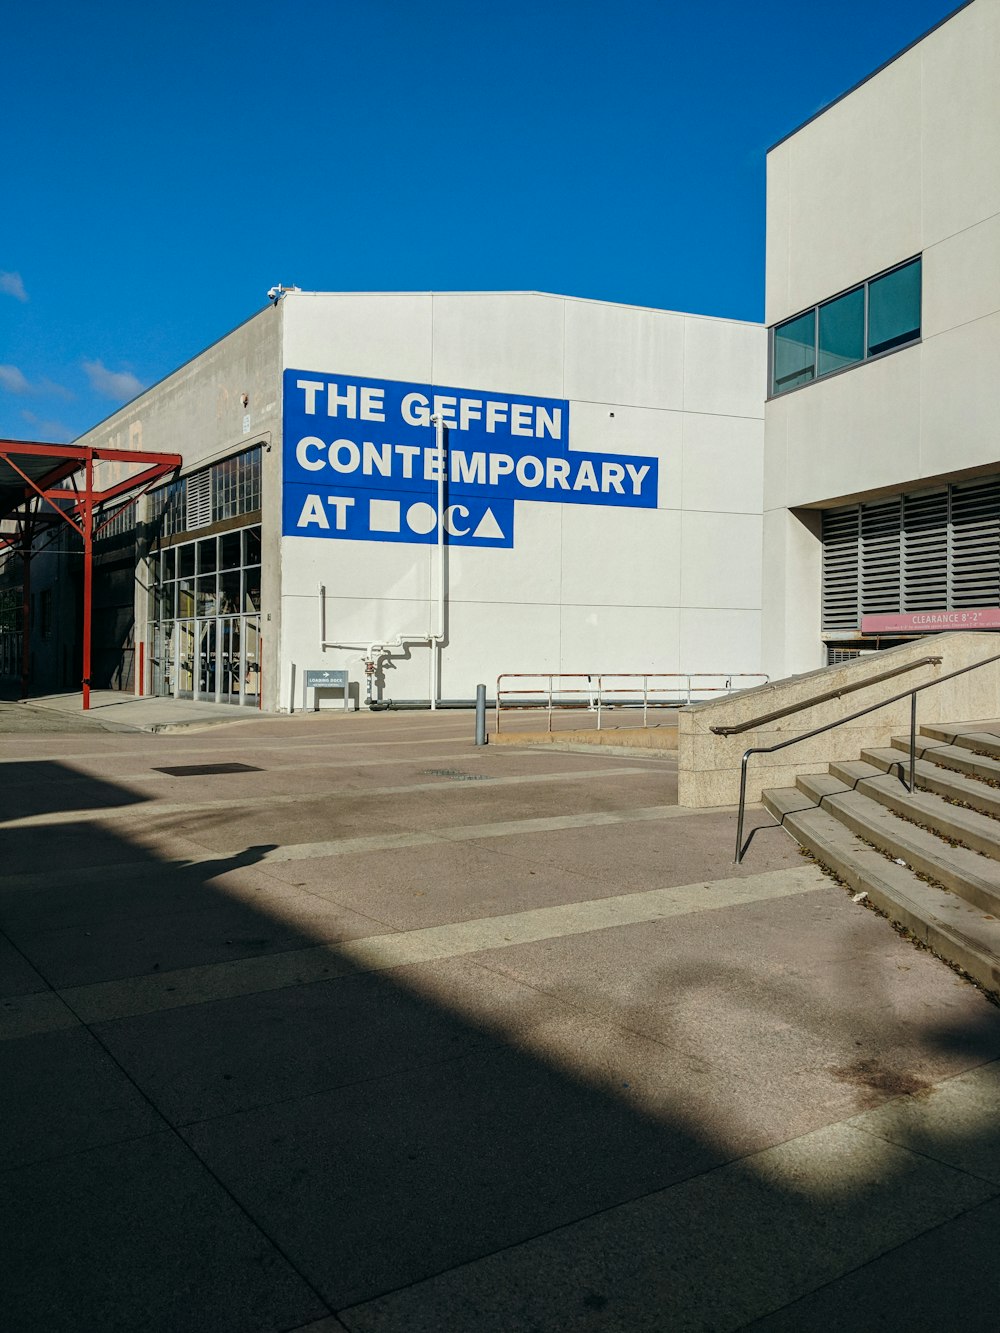 El edificio Geffen Contemporary bajo el cielo azul durante el día